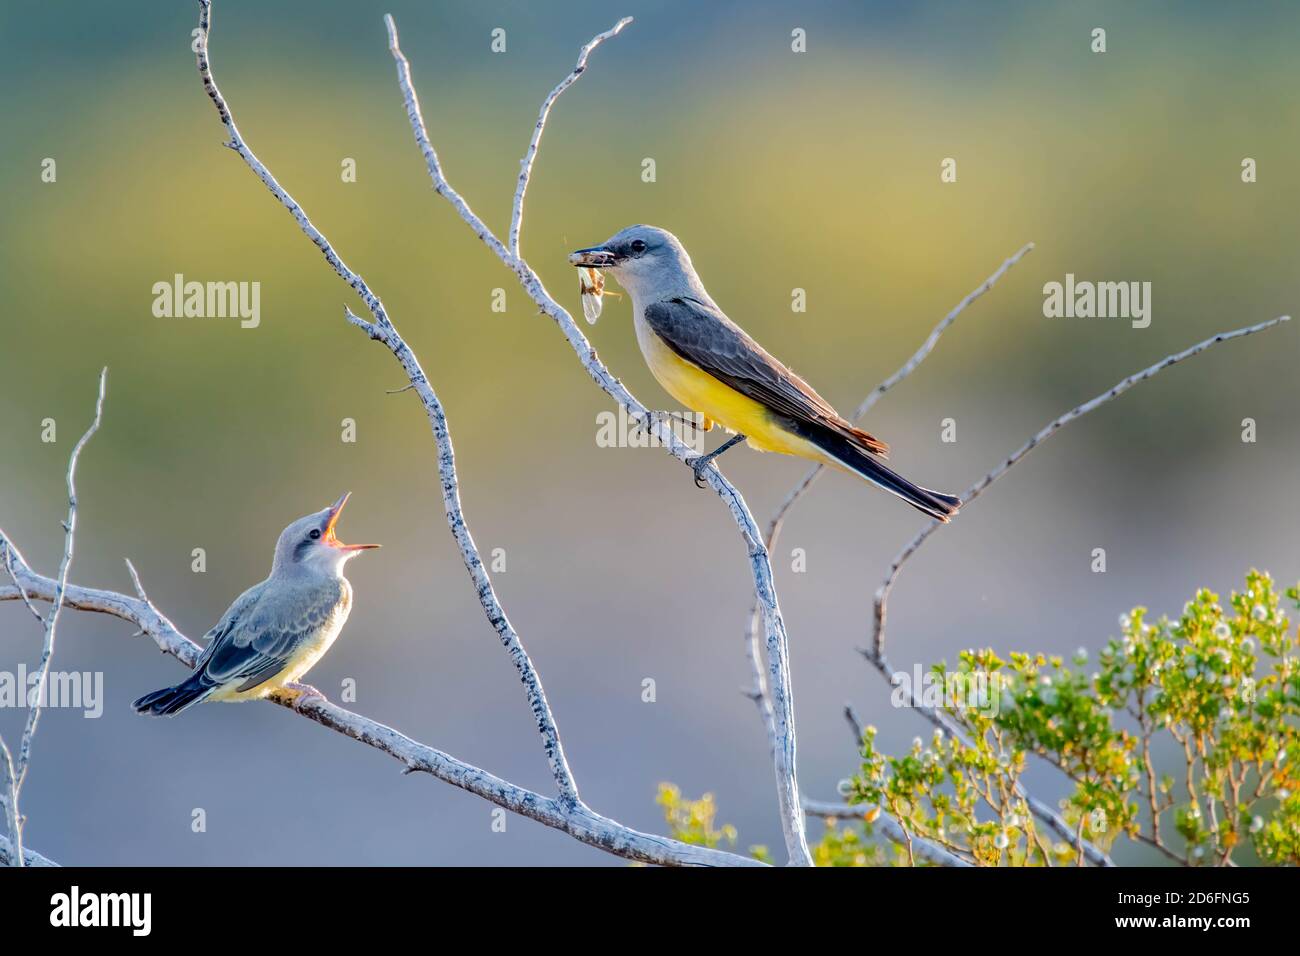 Western kingbird, Socorro county, New Mexico, USA. Stock Photo